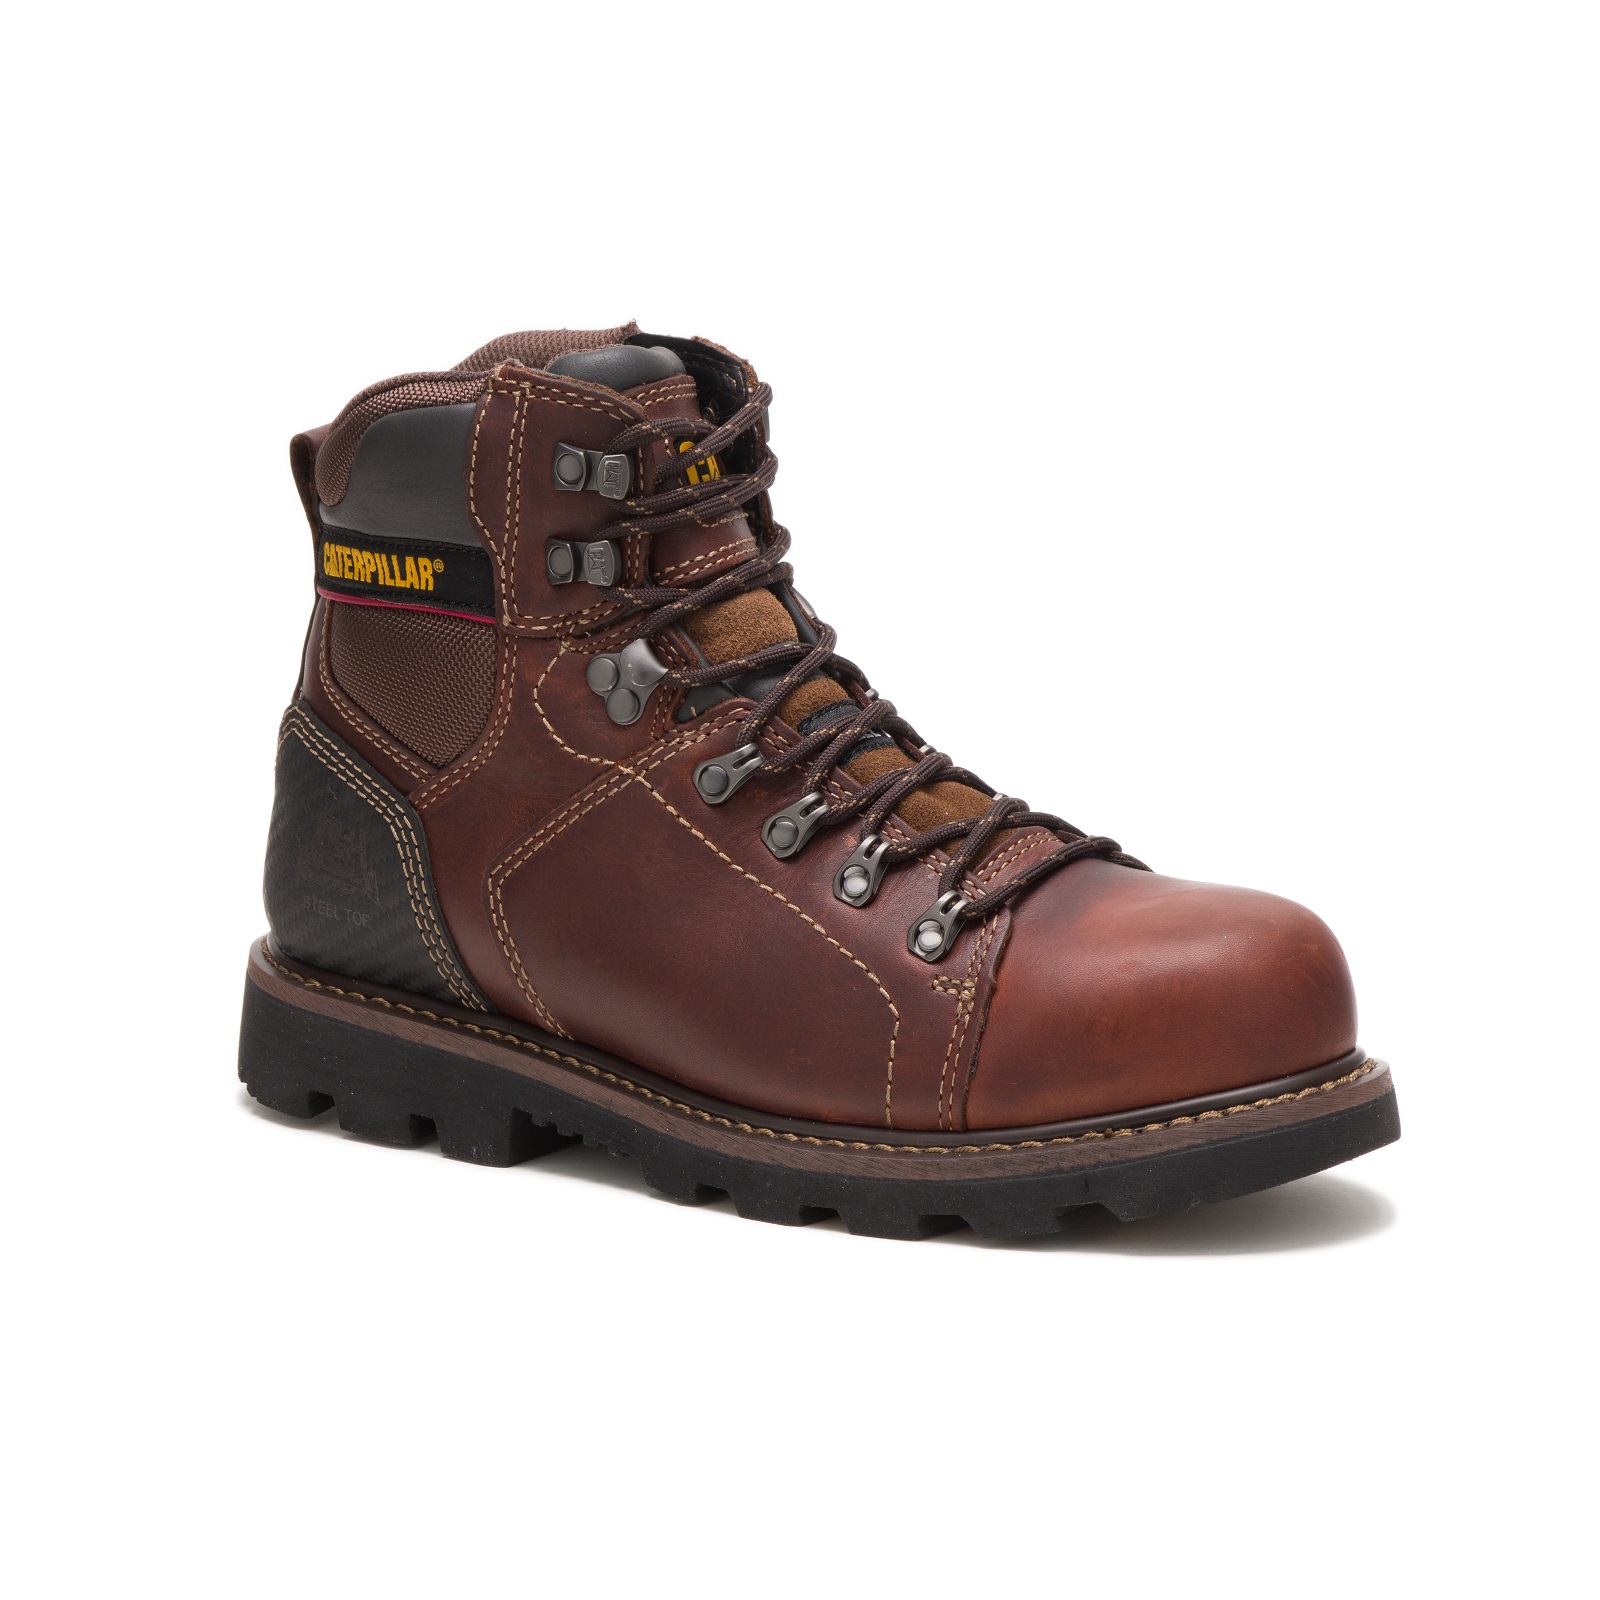 Cat Footwear Men's Alaska 2.0 6" Brown Steel Toe Boot - Wide Width Available